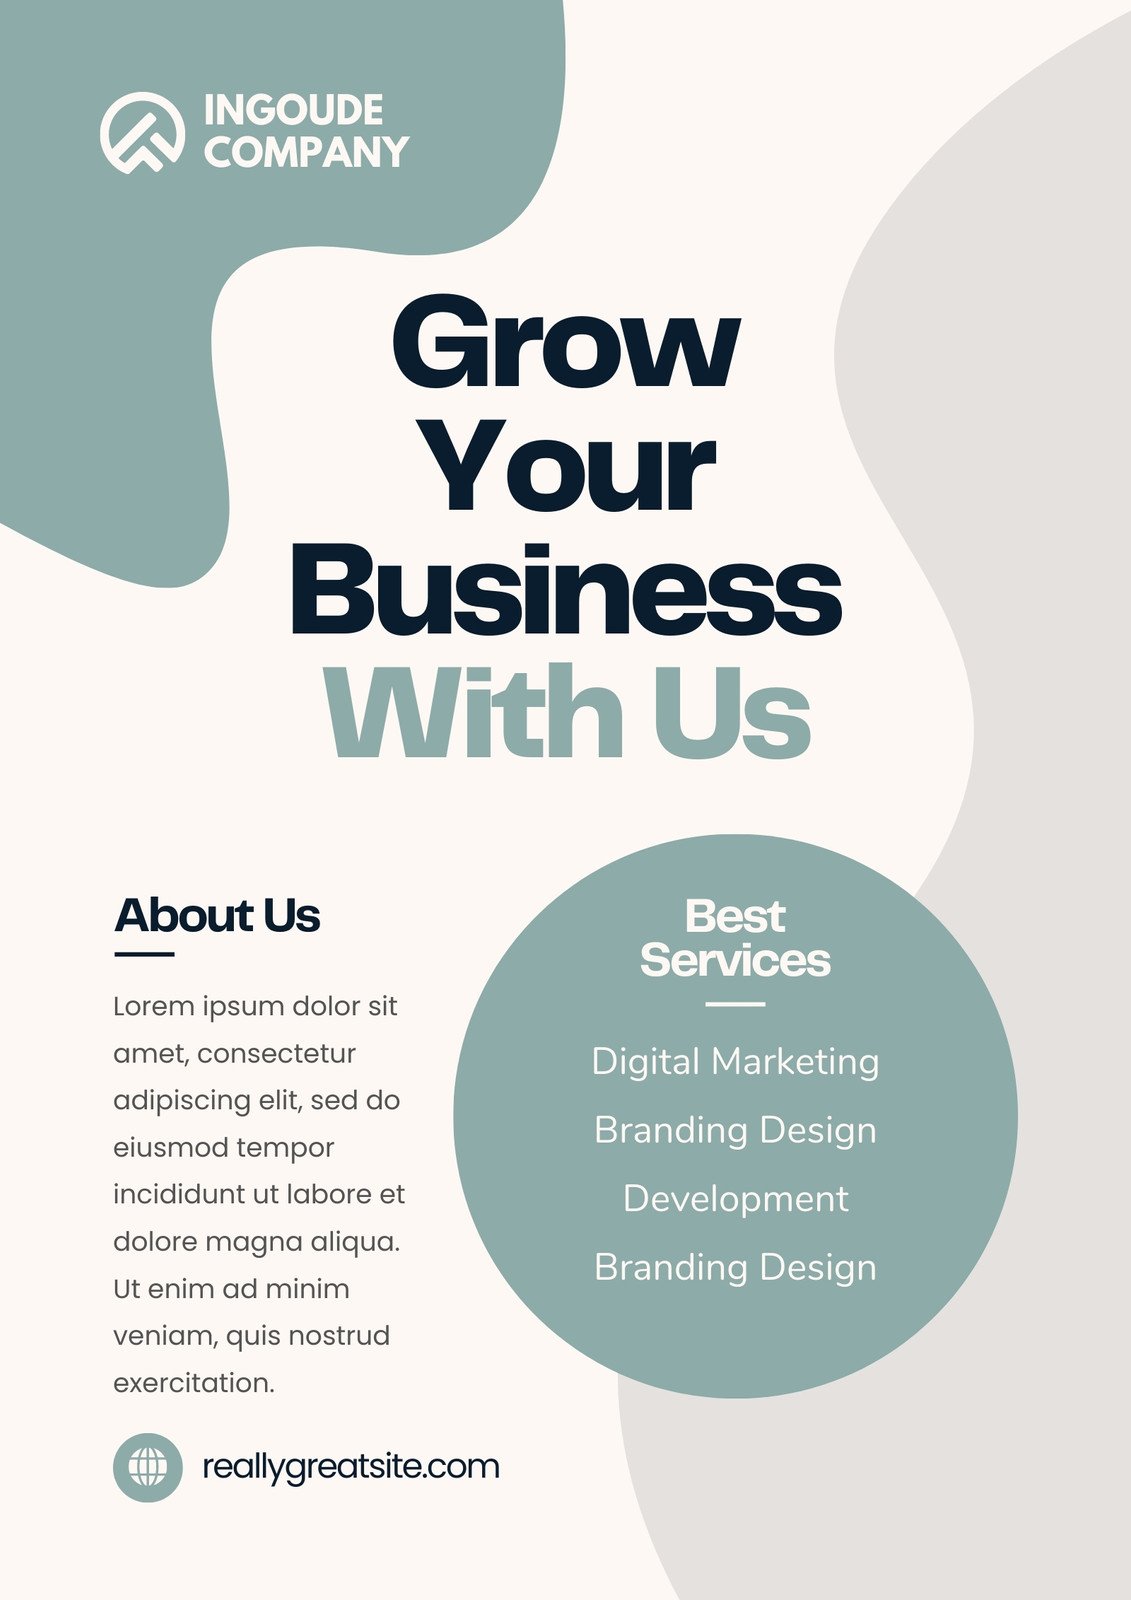 Birthday Sales Design  Flyer design inspiration, Graphic design